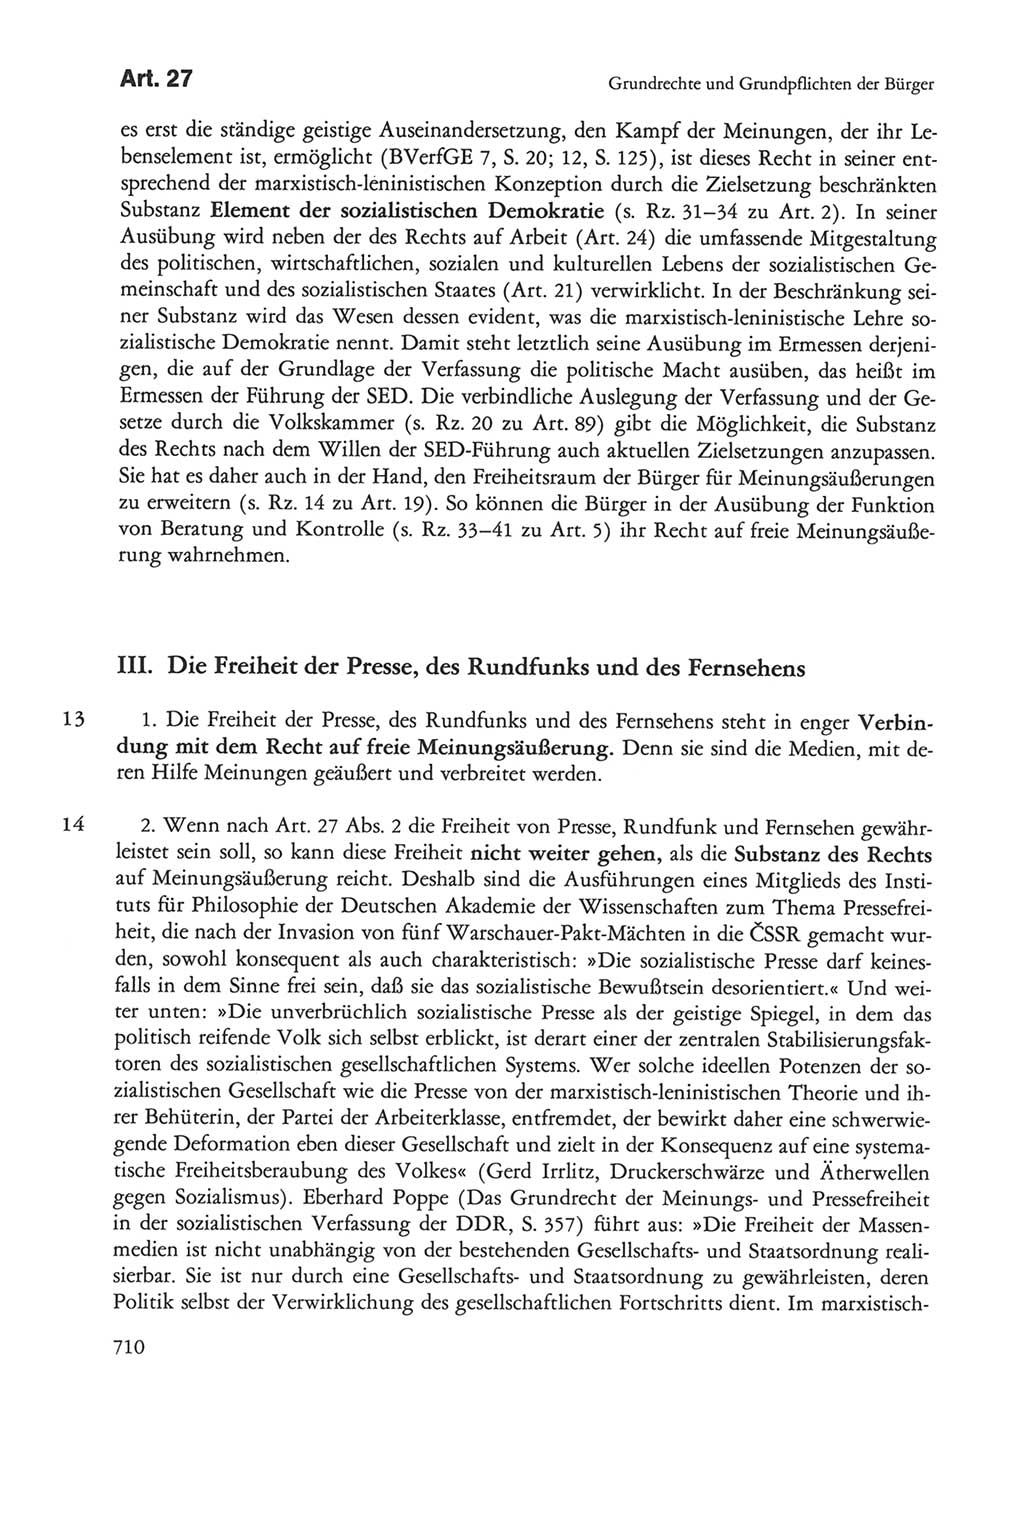 Die sozialistische Verfassung der Deutschen Demokratischen Republik (DDR), Kommentar mit einem Nachtrag 1997, Seite 710 (Soz. Verf. DDR Komm. Nachtr. 1997, S. 710)